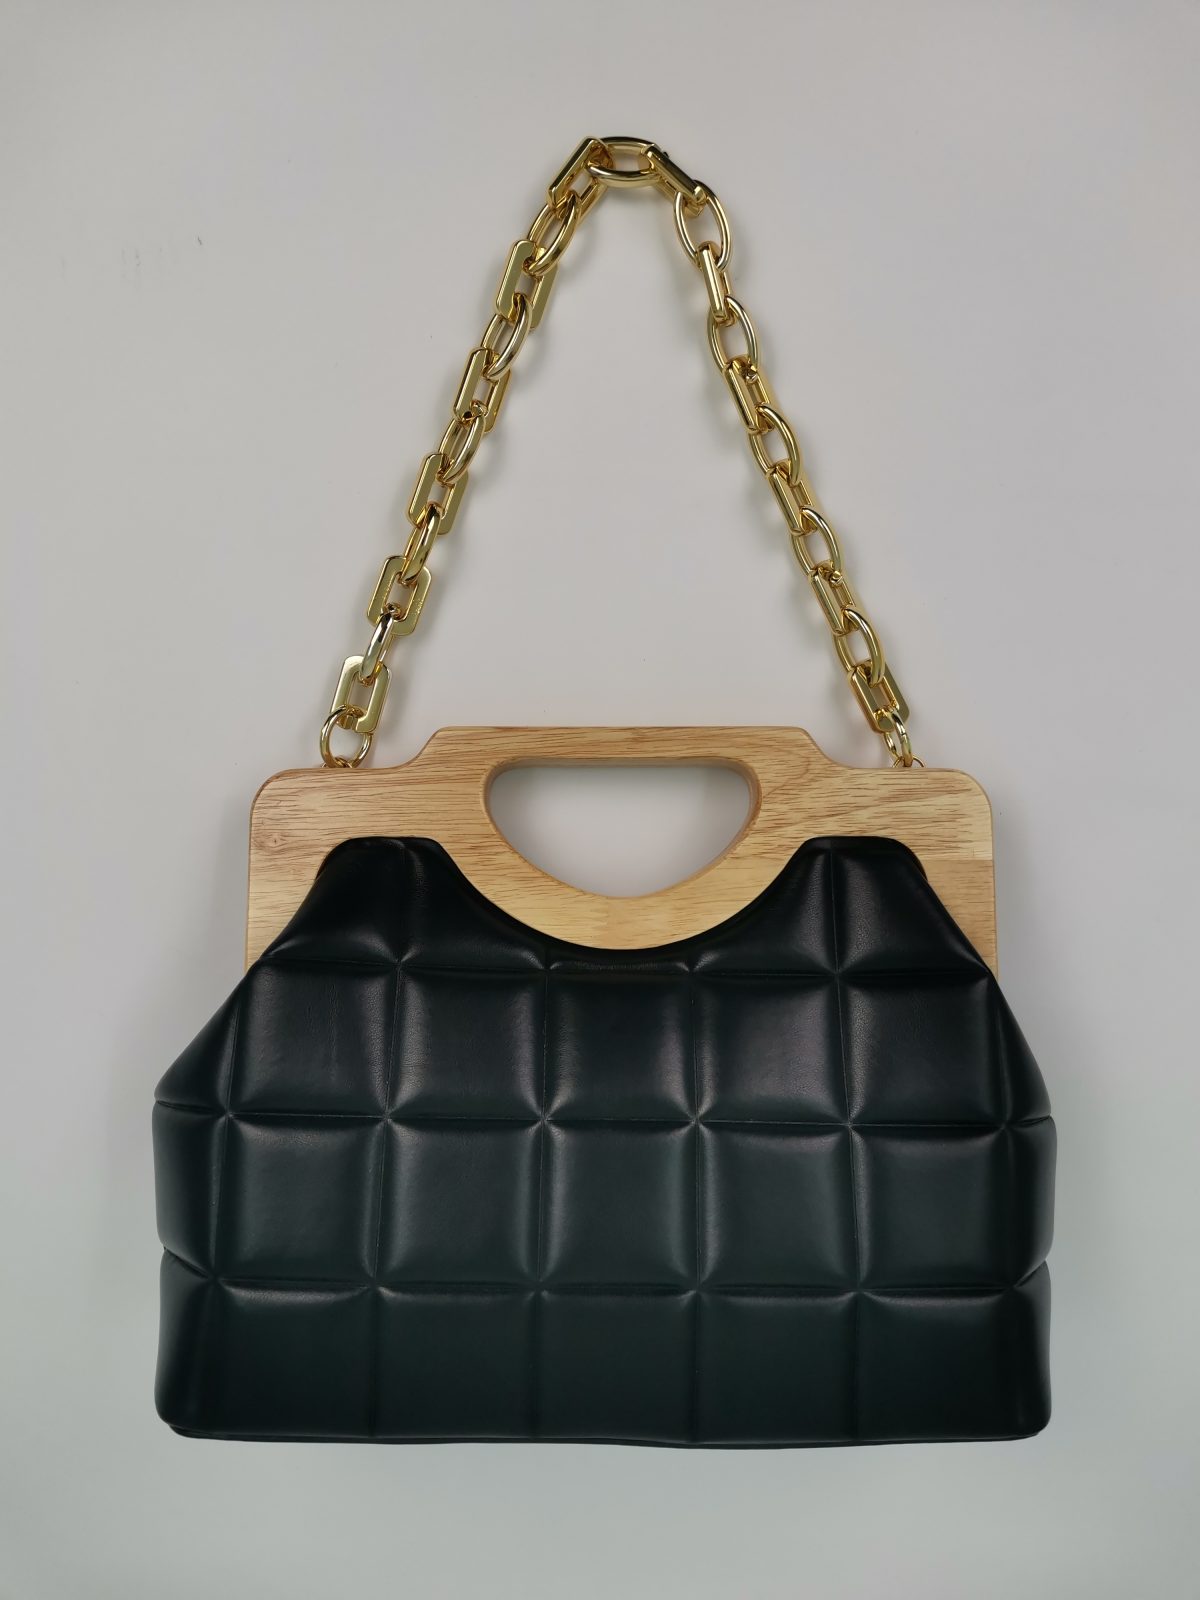 Τσάντα μαύρη με ξύλινη λαβή και χρυσή αλυσίδα